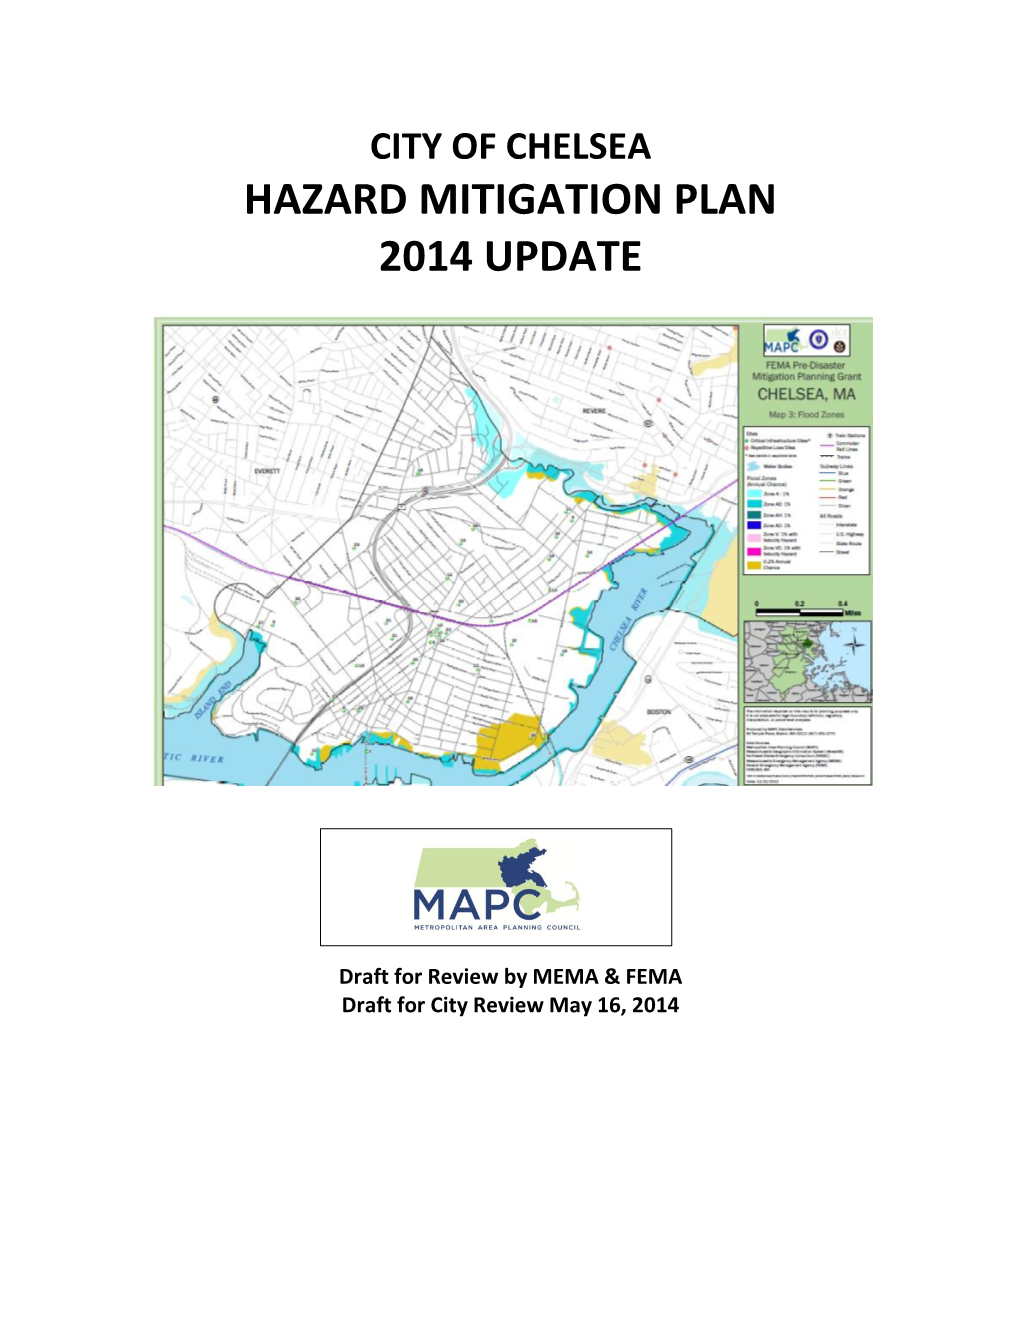 Hazard Mitigation Plan 2014 Update